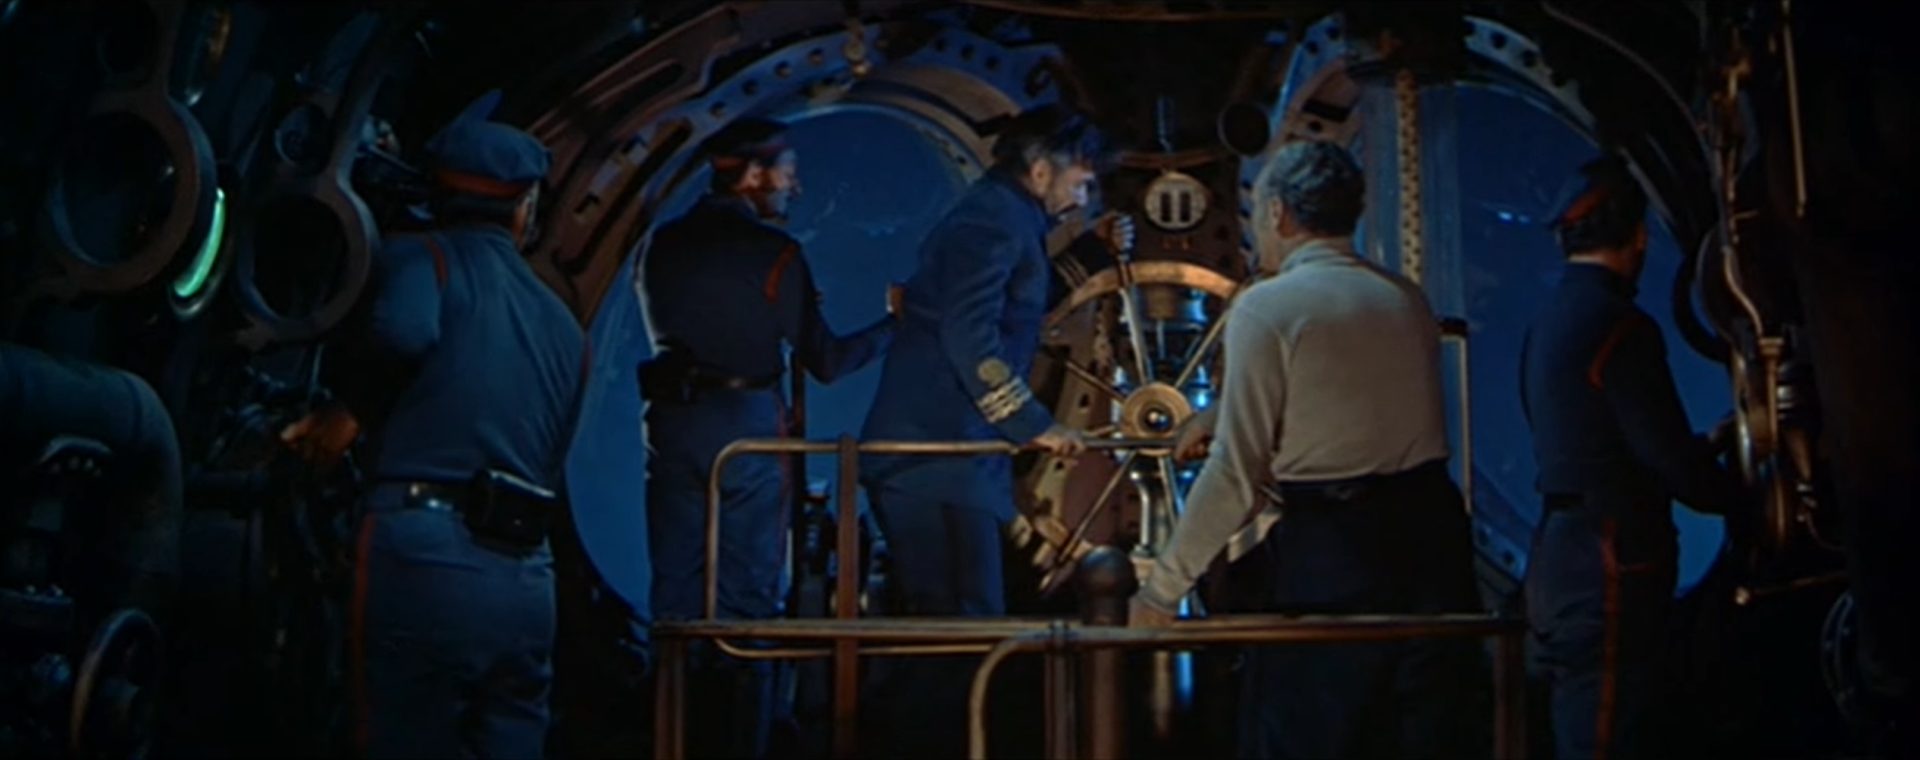 Technicolor-Szene mit Kapitän Nemo auf der Brücke am Steuerrad der getauchten Nautilus im Beisein einiger Crewmitglieder.